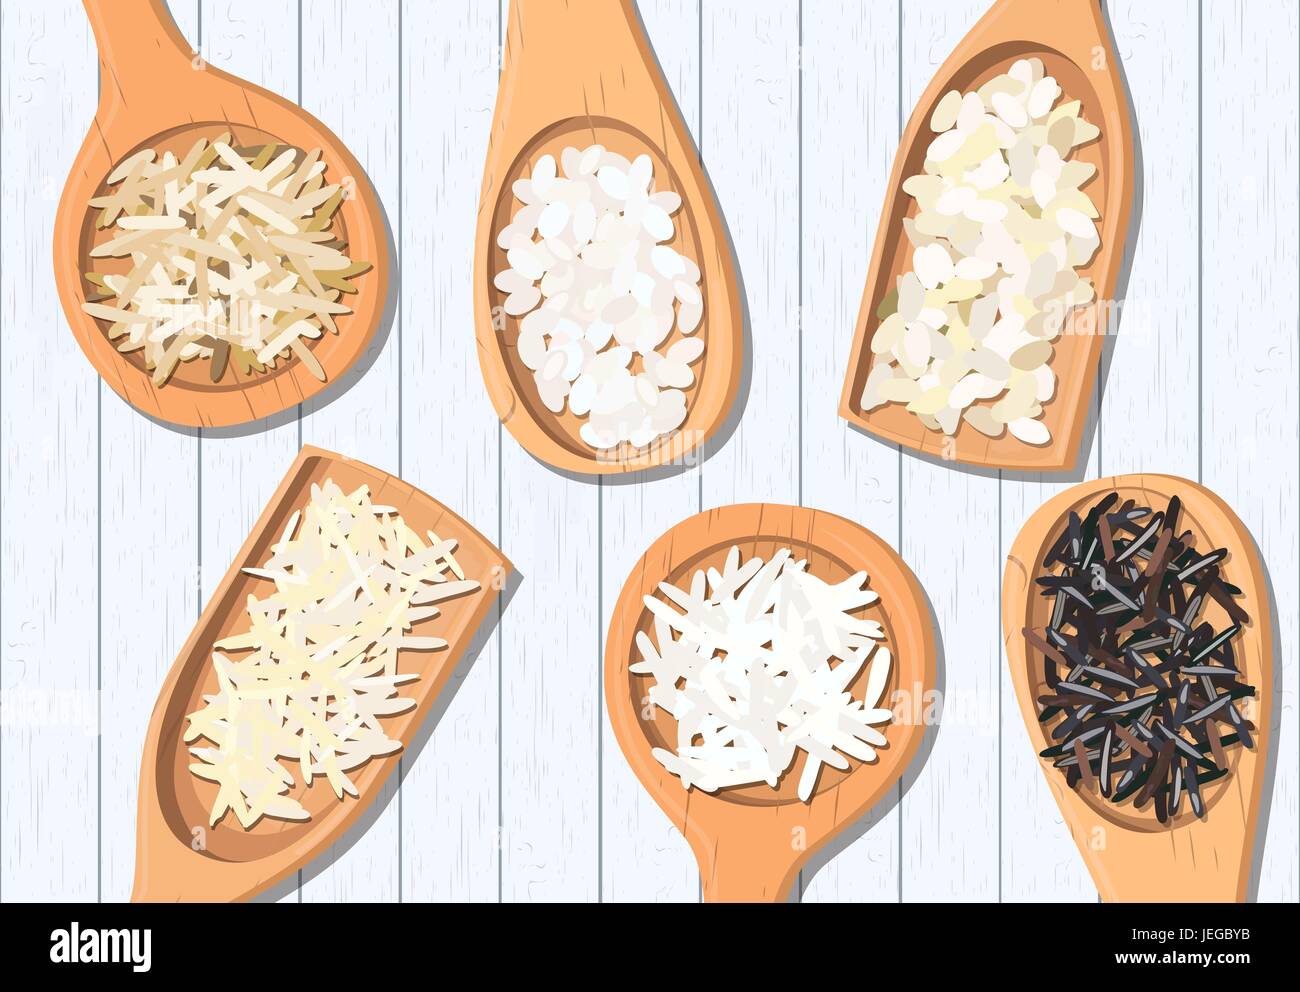 Verschiedene Arten von Reis in Holzlöffel. Basmati, wild, Jasmin, lange braune, Arborio, sushi Stock Vektor